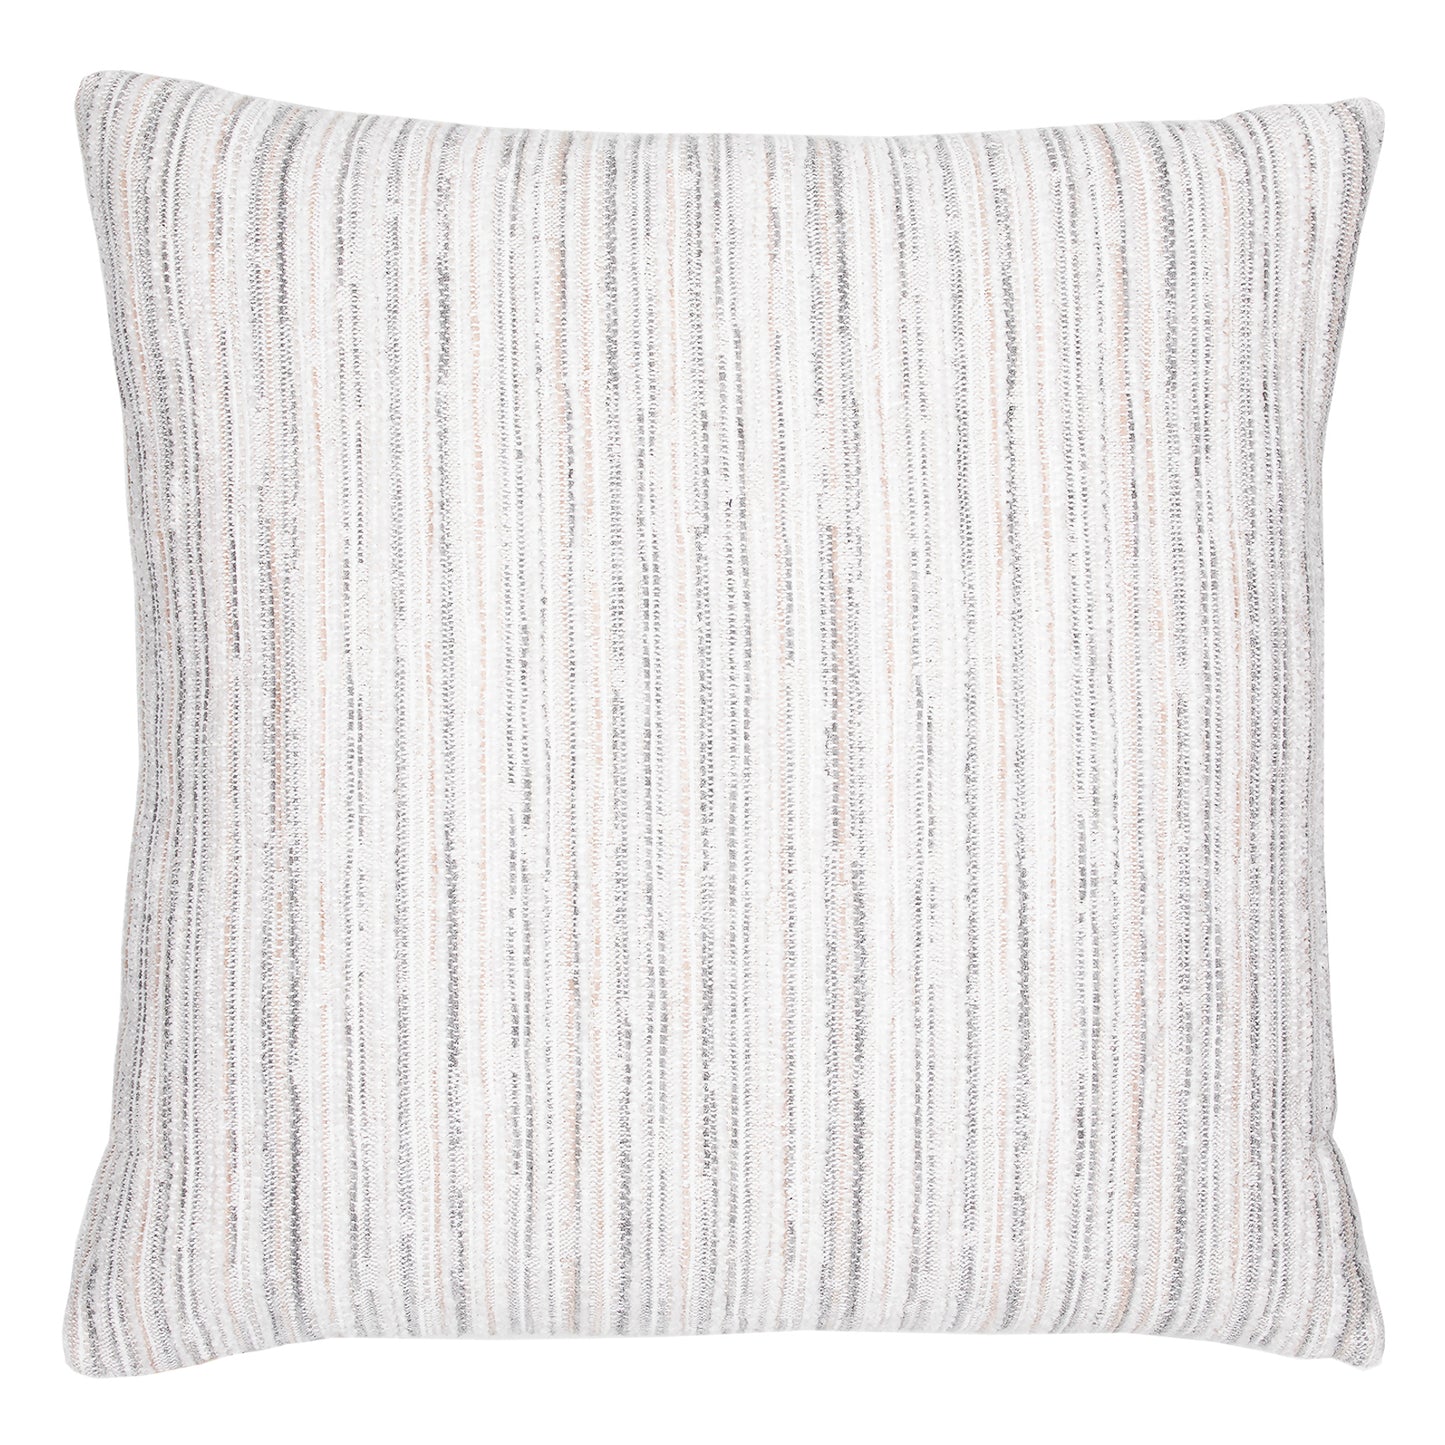 Elaine Smith 22 Square Pillow Luxe Stripe Pebble, image 1